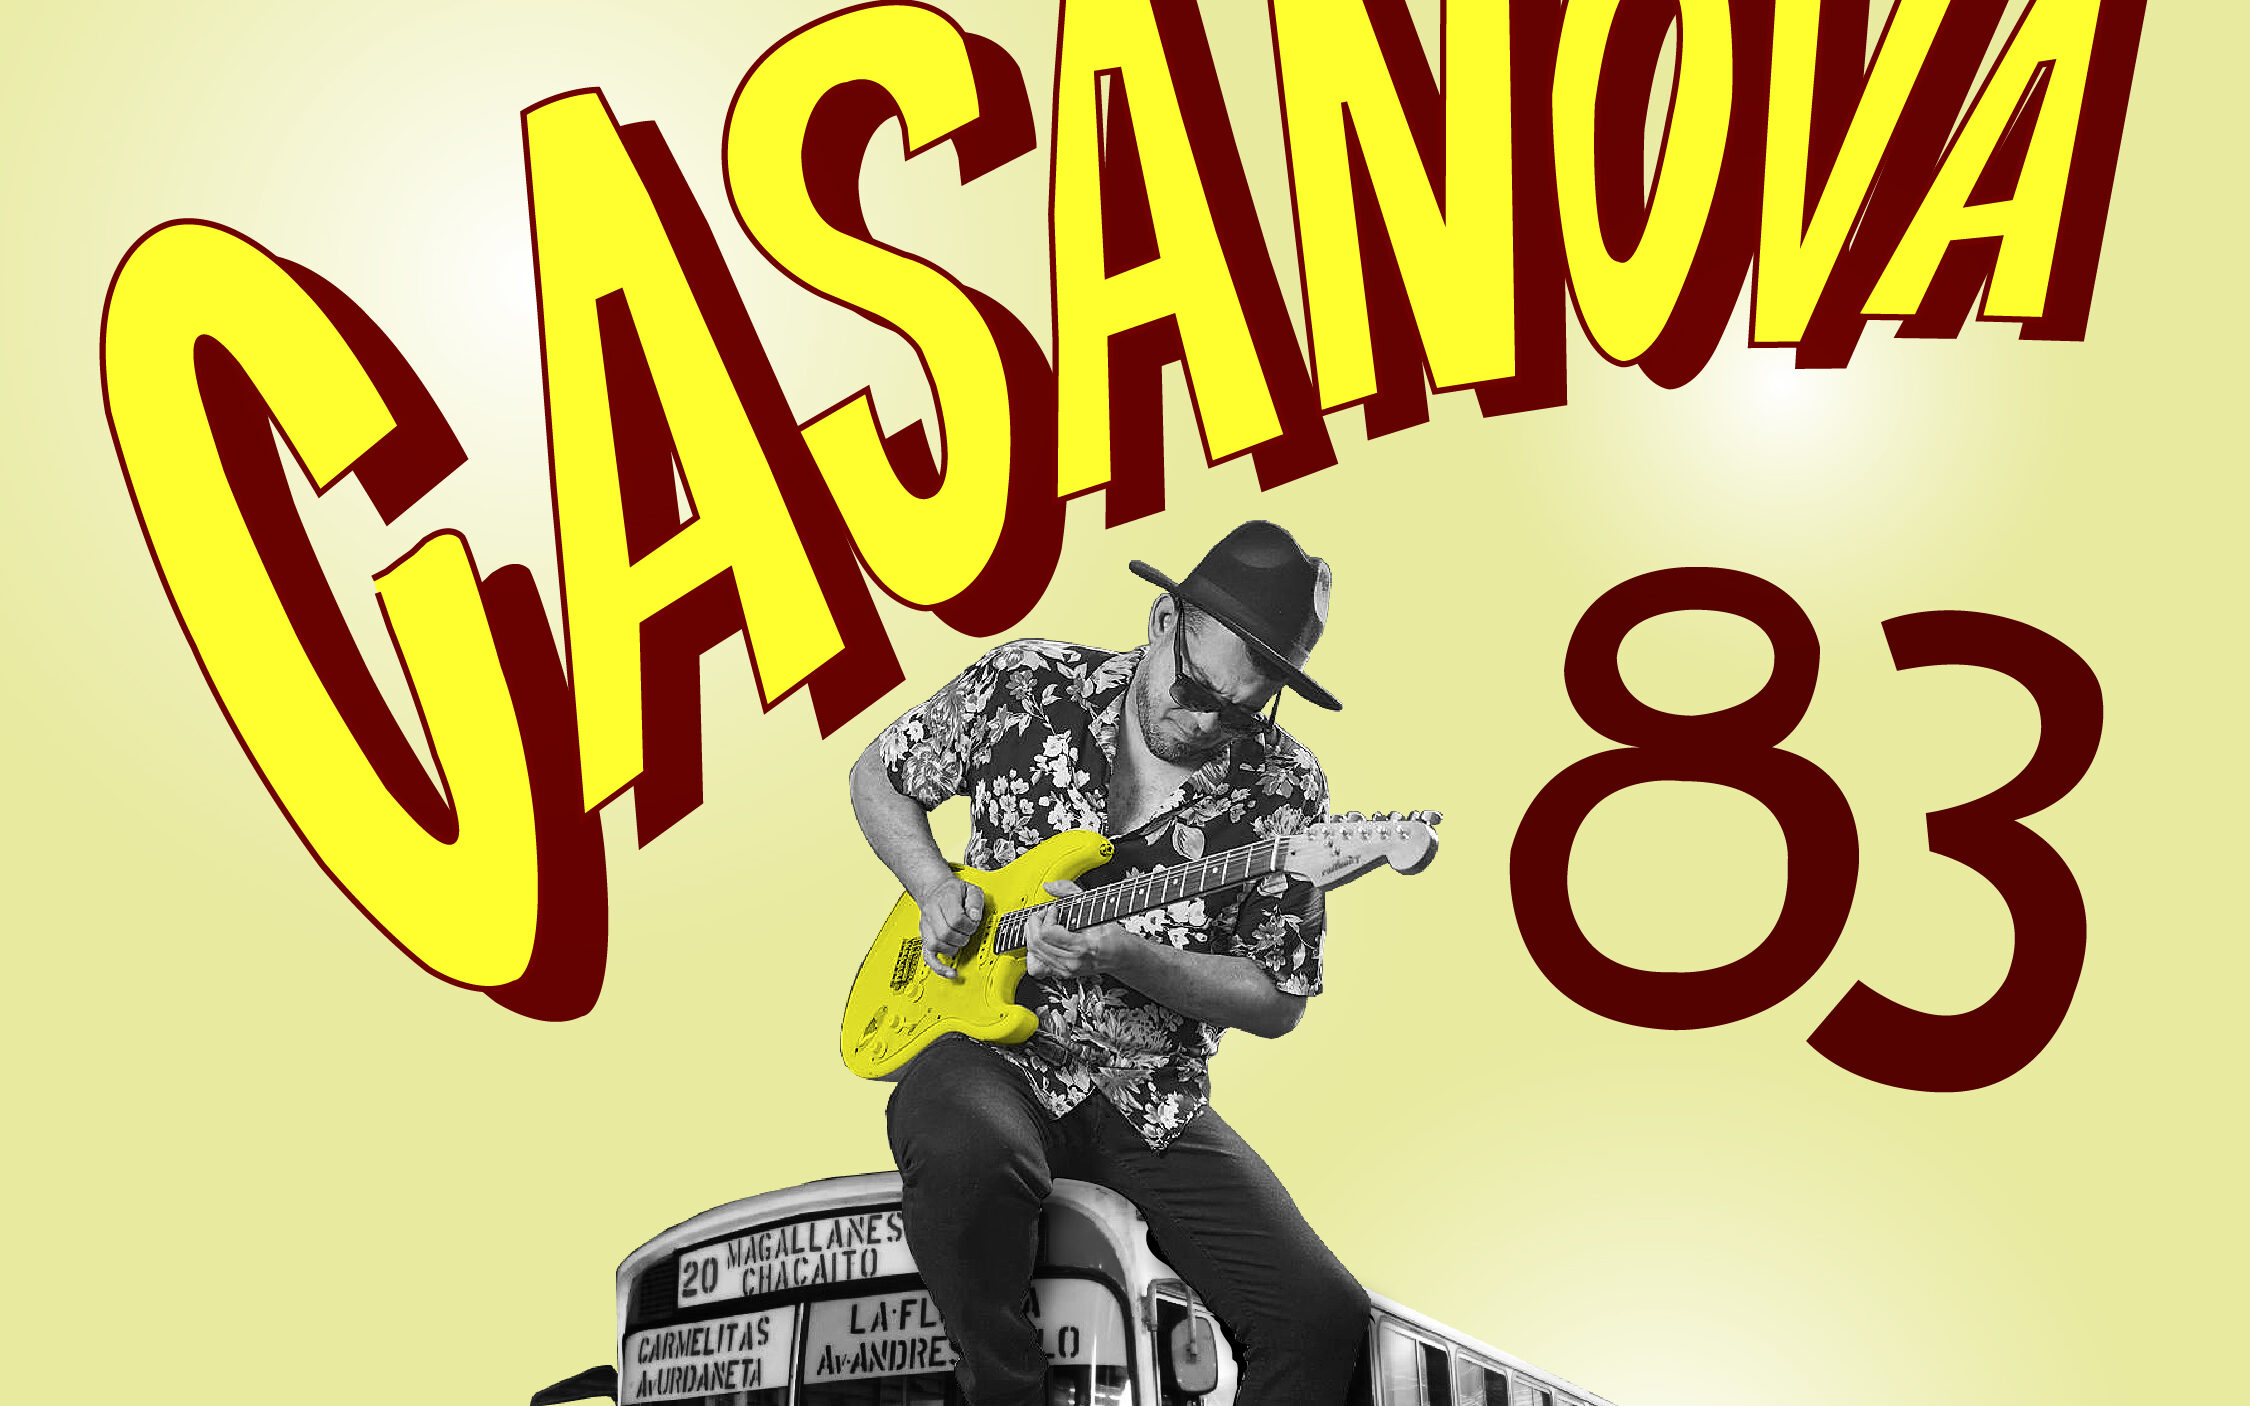 Raifunky se expresa con la salsa en ‘Casanova 83’